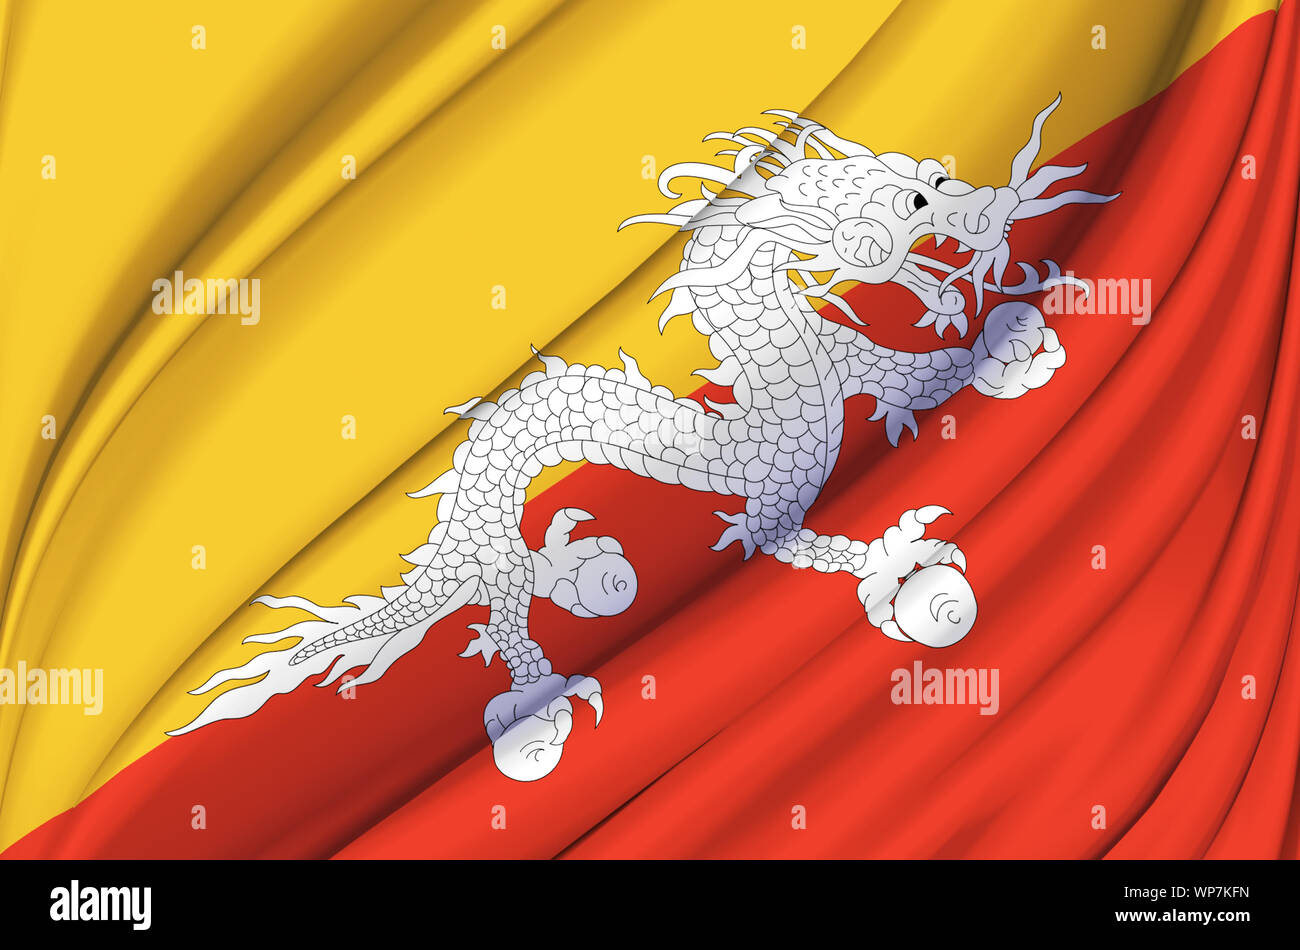 Đây là một illustration tuyệt đẹp của cờ Bhutan đang tung bay với các nước châu Á nằm trong nền. Bức tranh này sẽ giúp bạn hiểu rõ hơn về ý nghĩa của chiếc cờ này trong văn hóa và lịch sử châu Á.